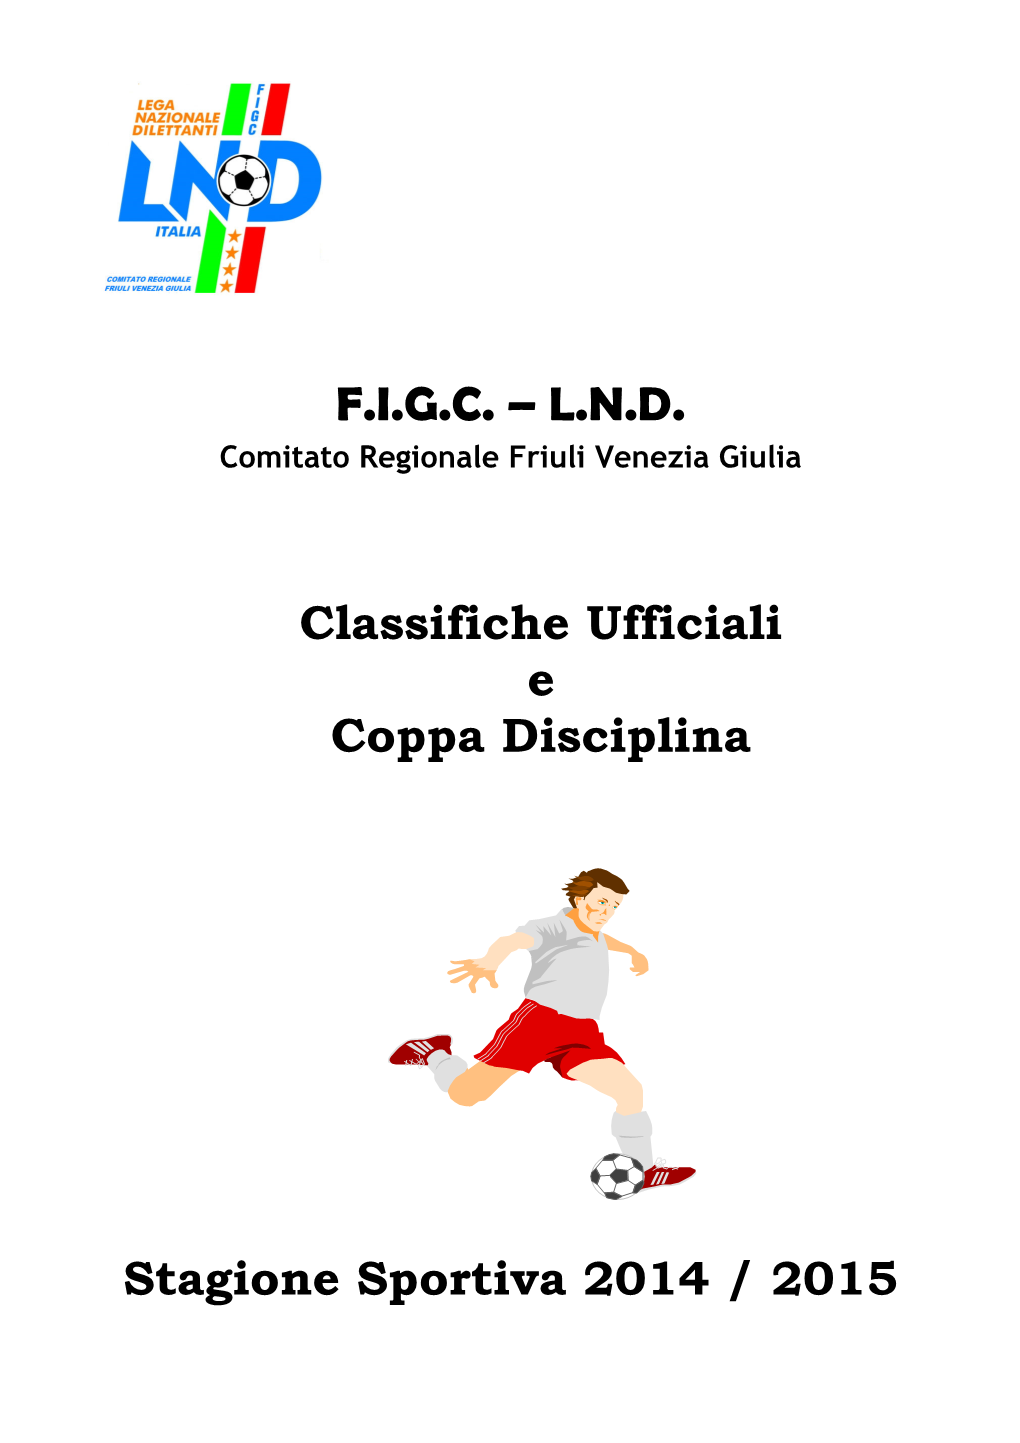 F.I.G.C. – L.N.D. Classifiche Ufficiali E Coppa Disciplina Stagione Sportiva